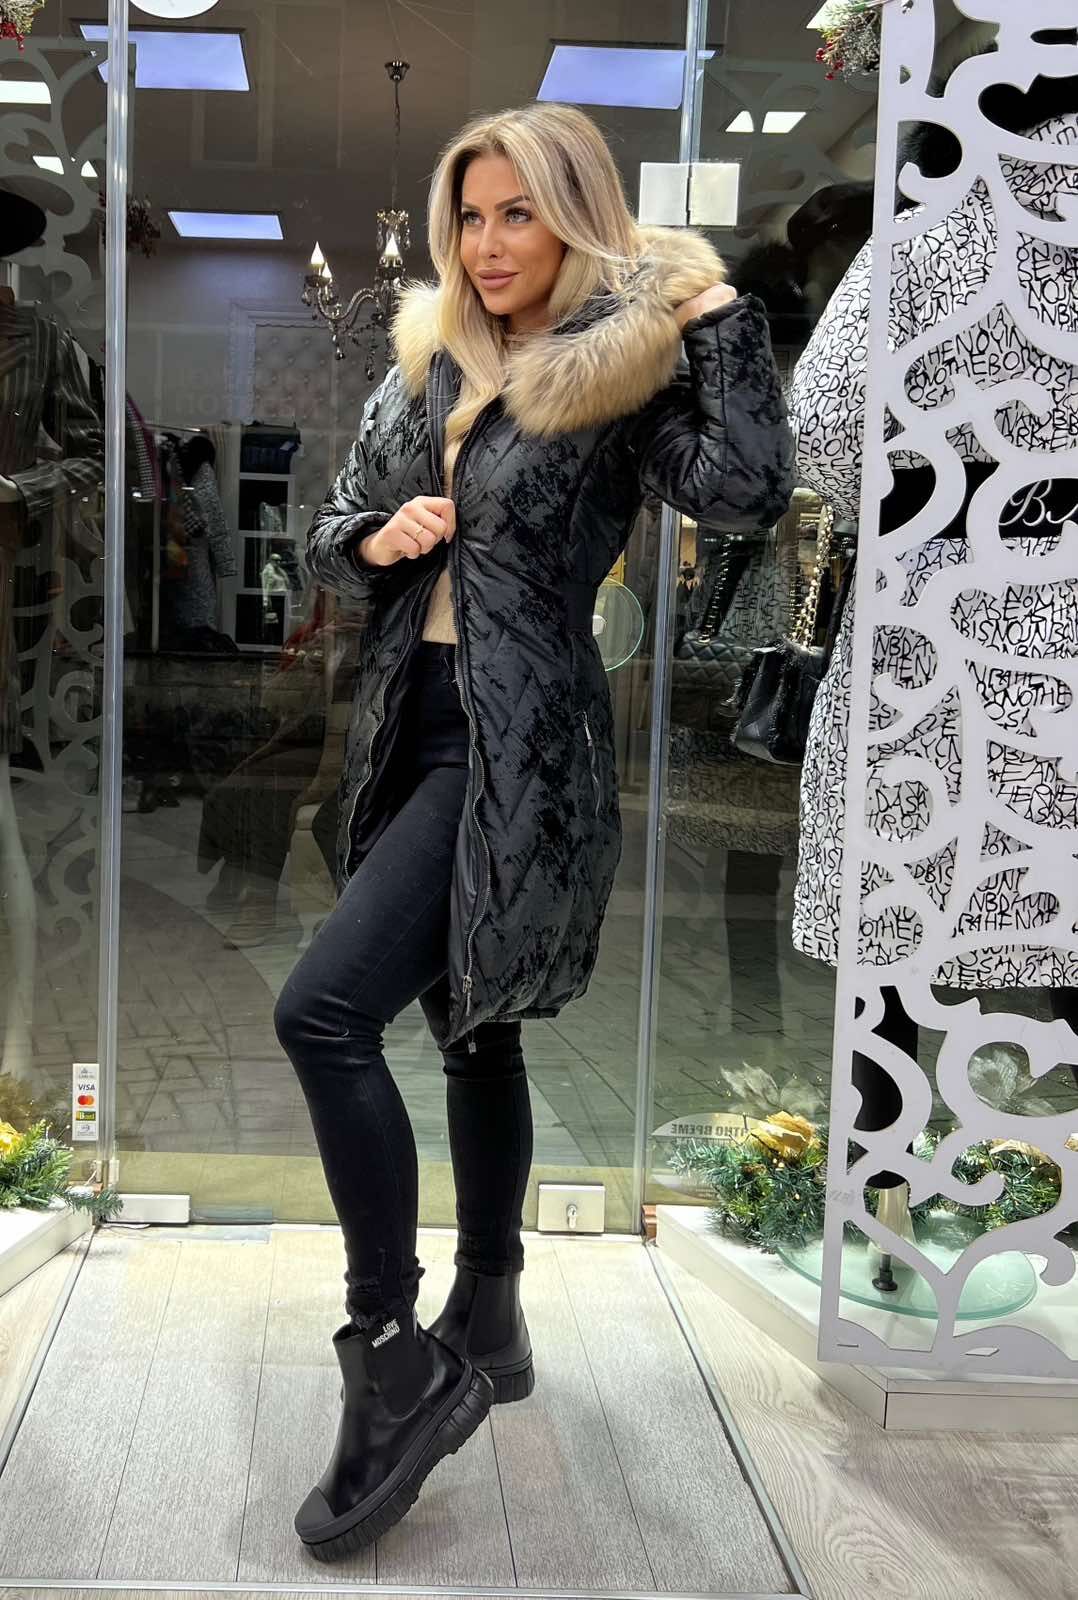 Български зимни якета